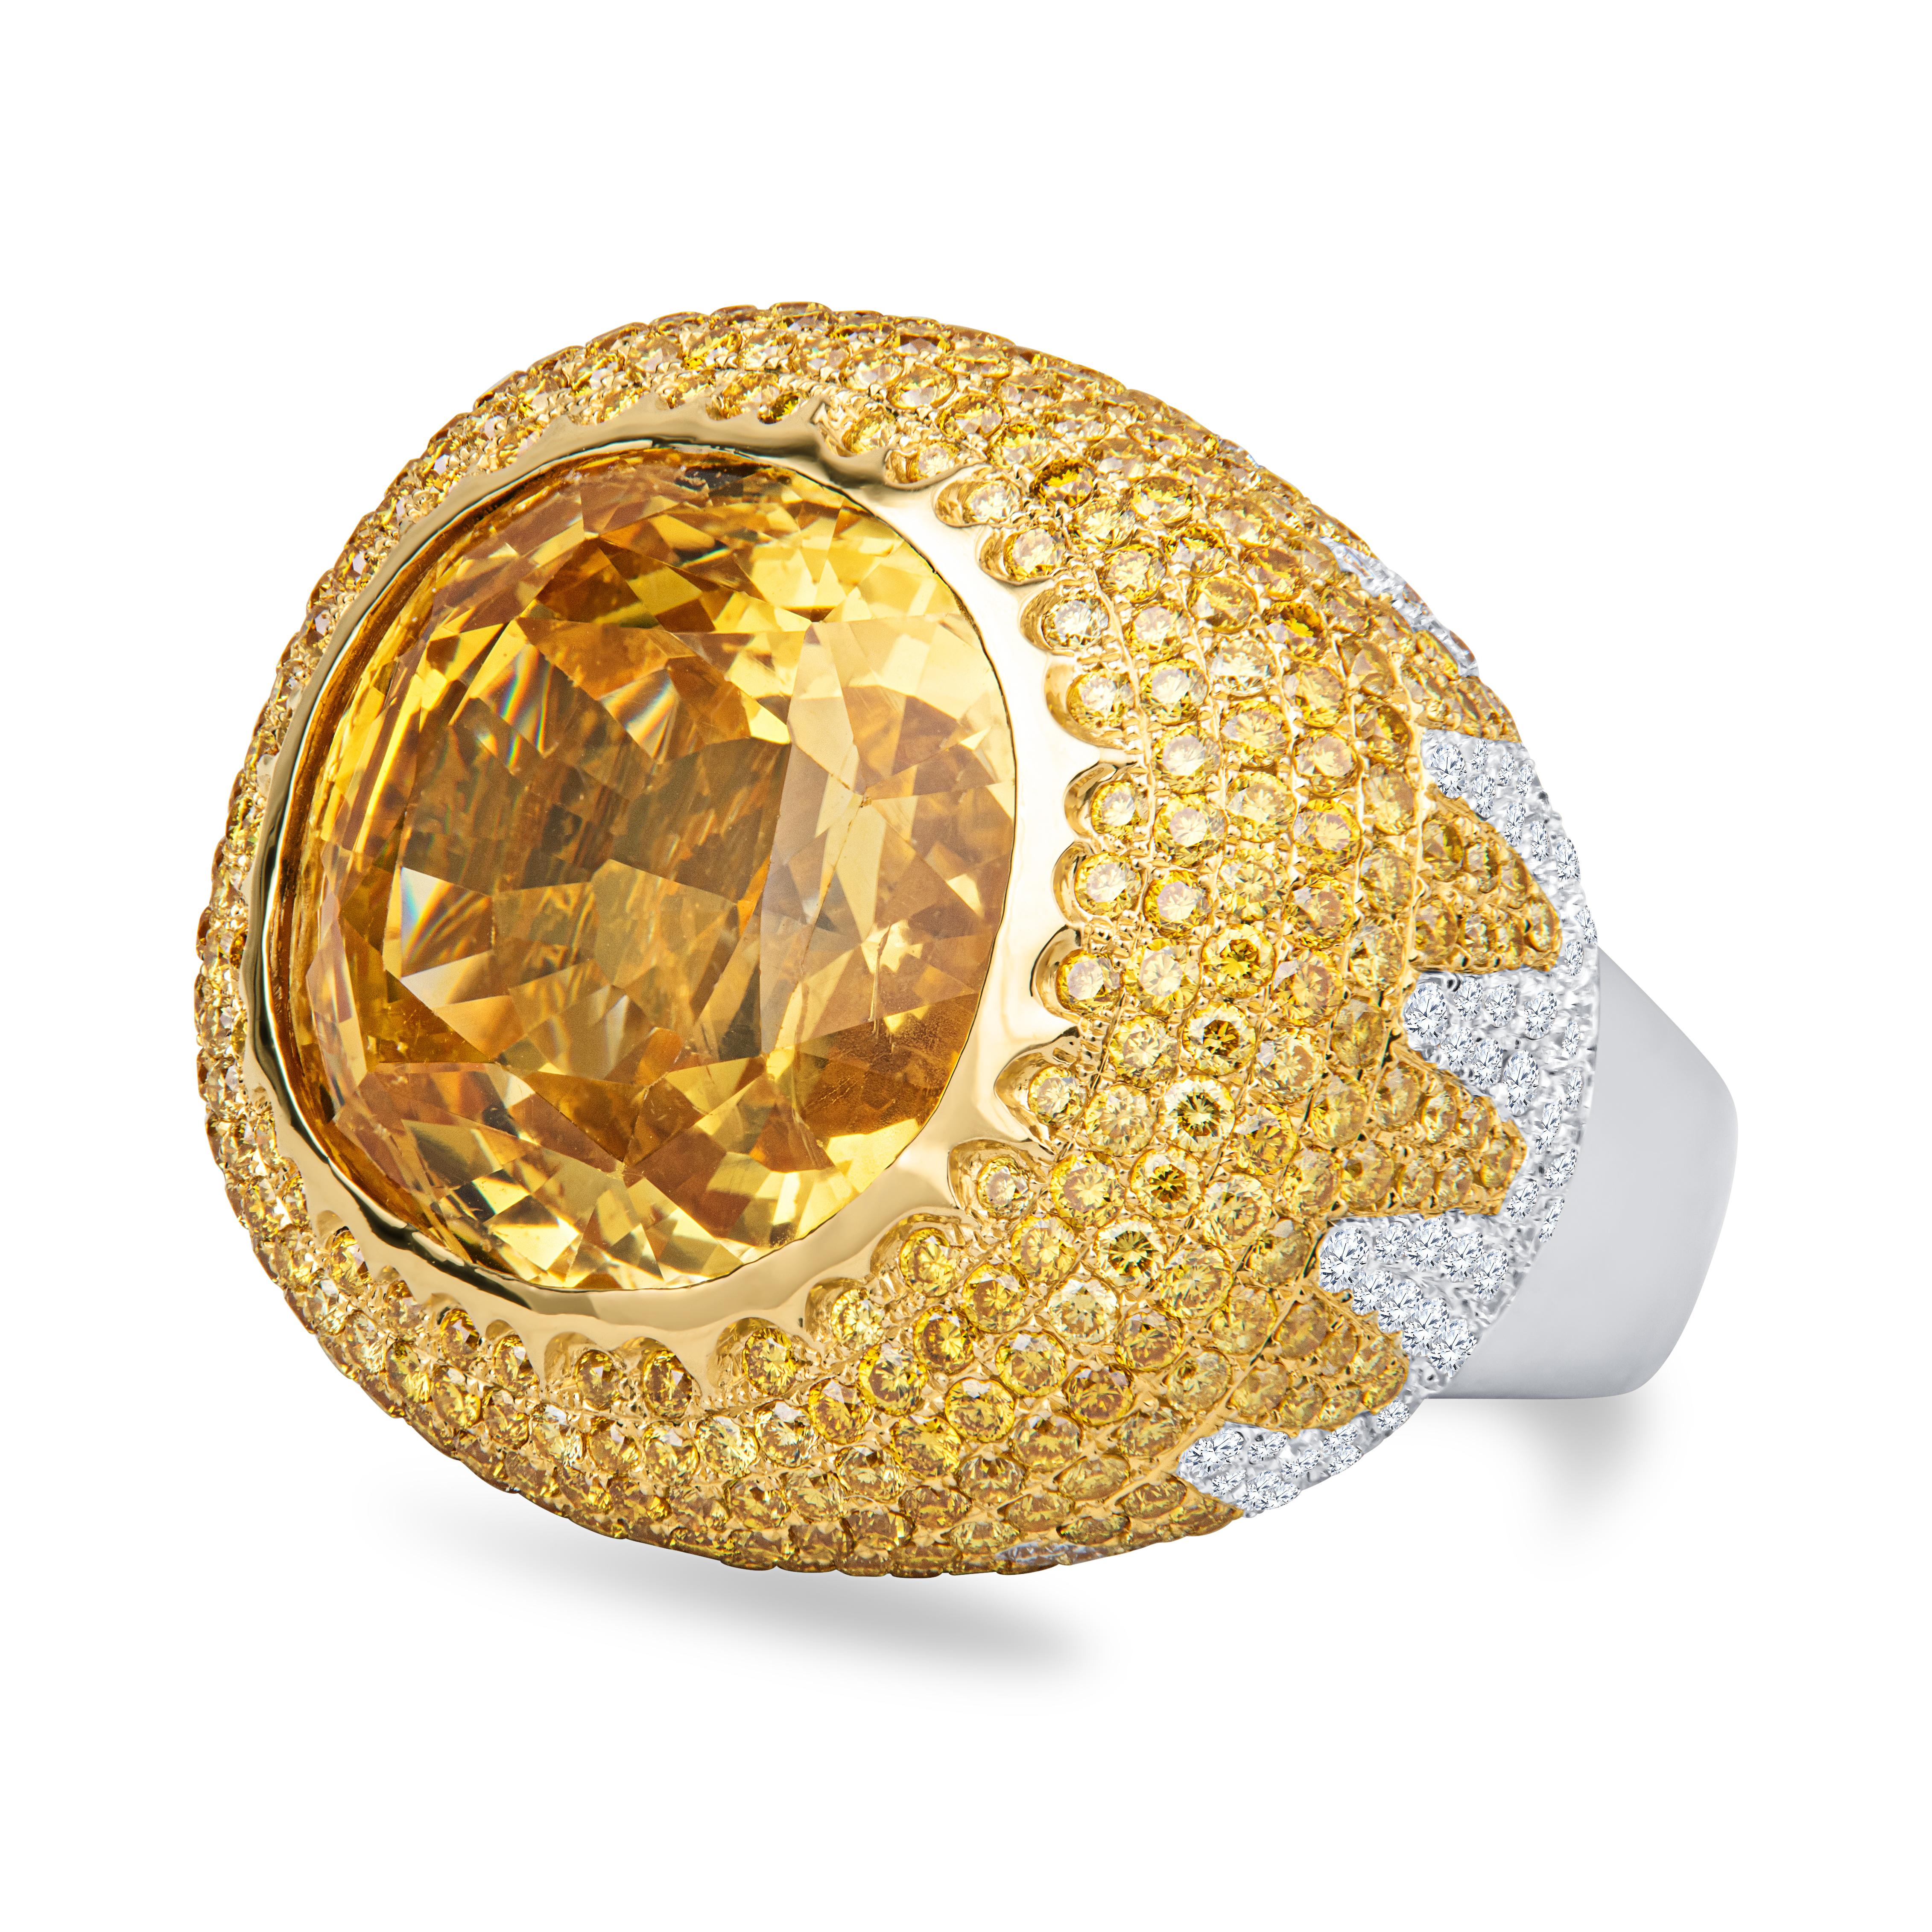 Dieser preisgekrönte, atemberaubende Ring ist mit einem 60,15ct natürlichen, nicht erhitzten, oval geschliffenen, gelben Saphir aus Sri Lanka (Ceylon) (AGL CS 84674) besetzt. Der Saphir ist ein reines Gelb mit lebhafter Sättigung und exquisitem